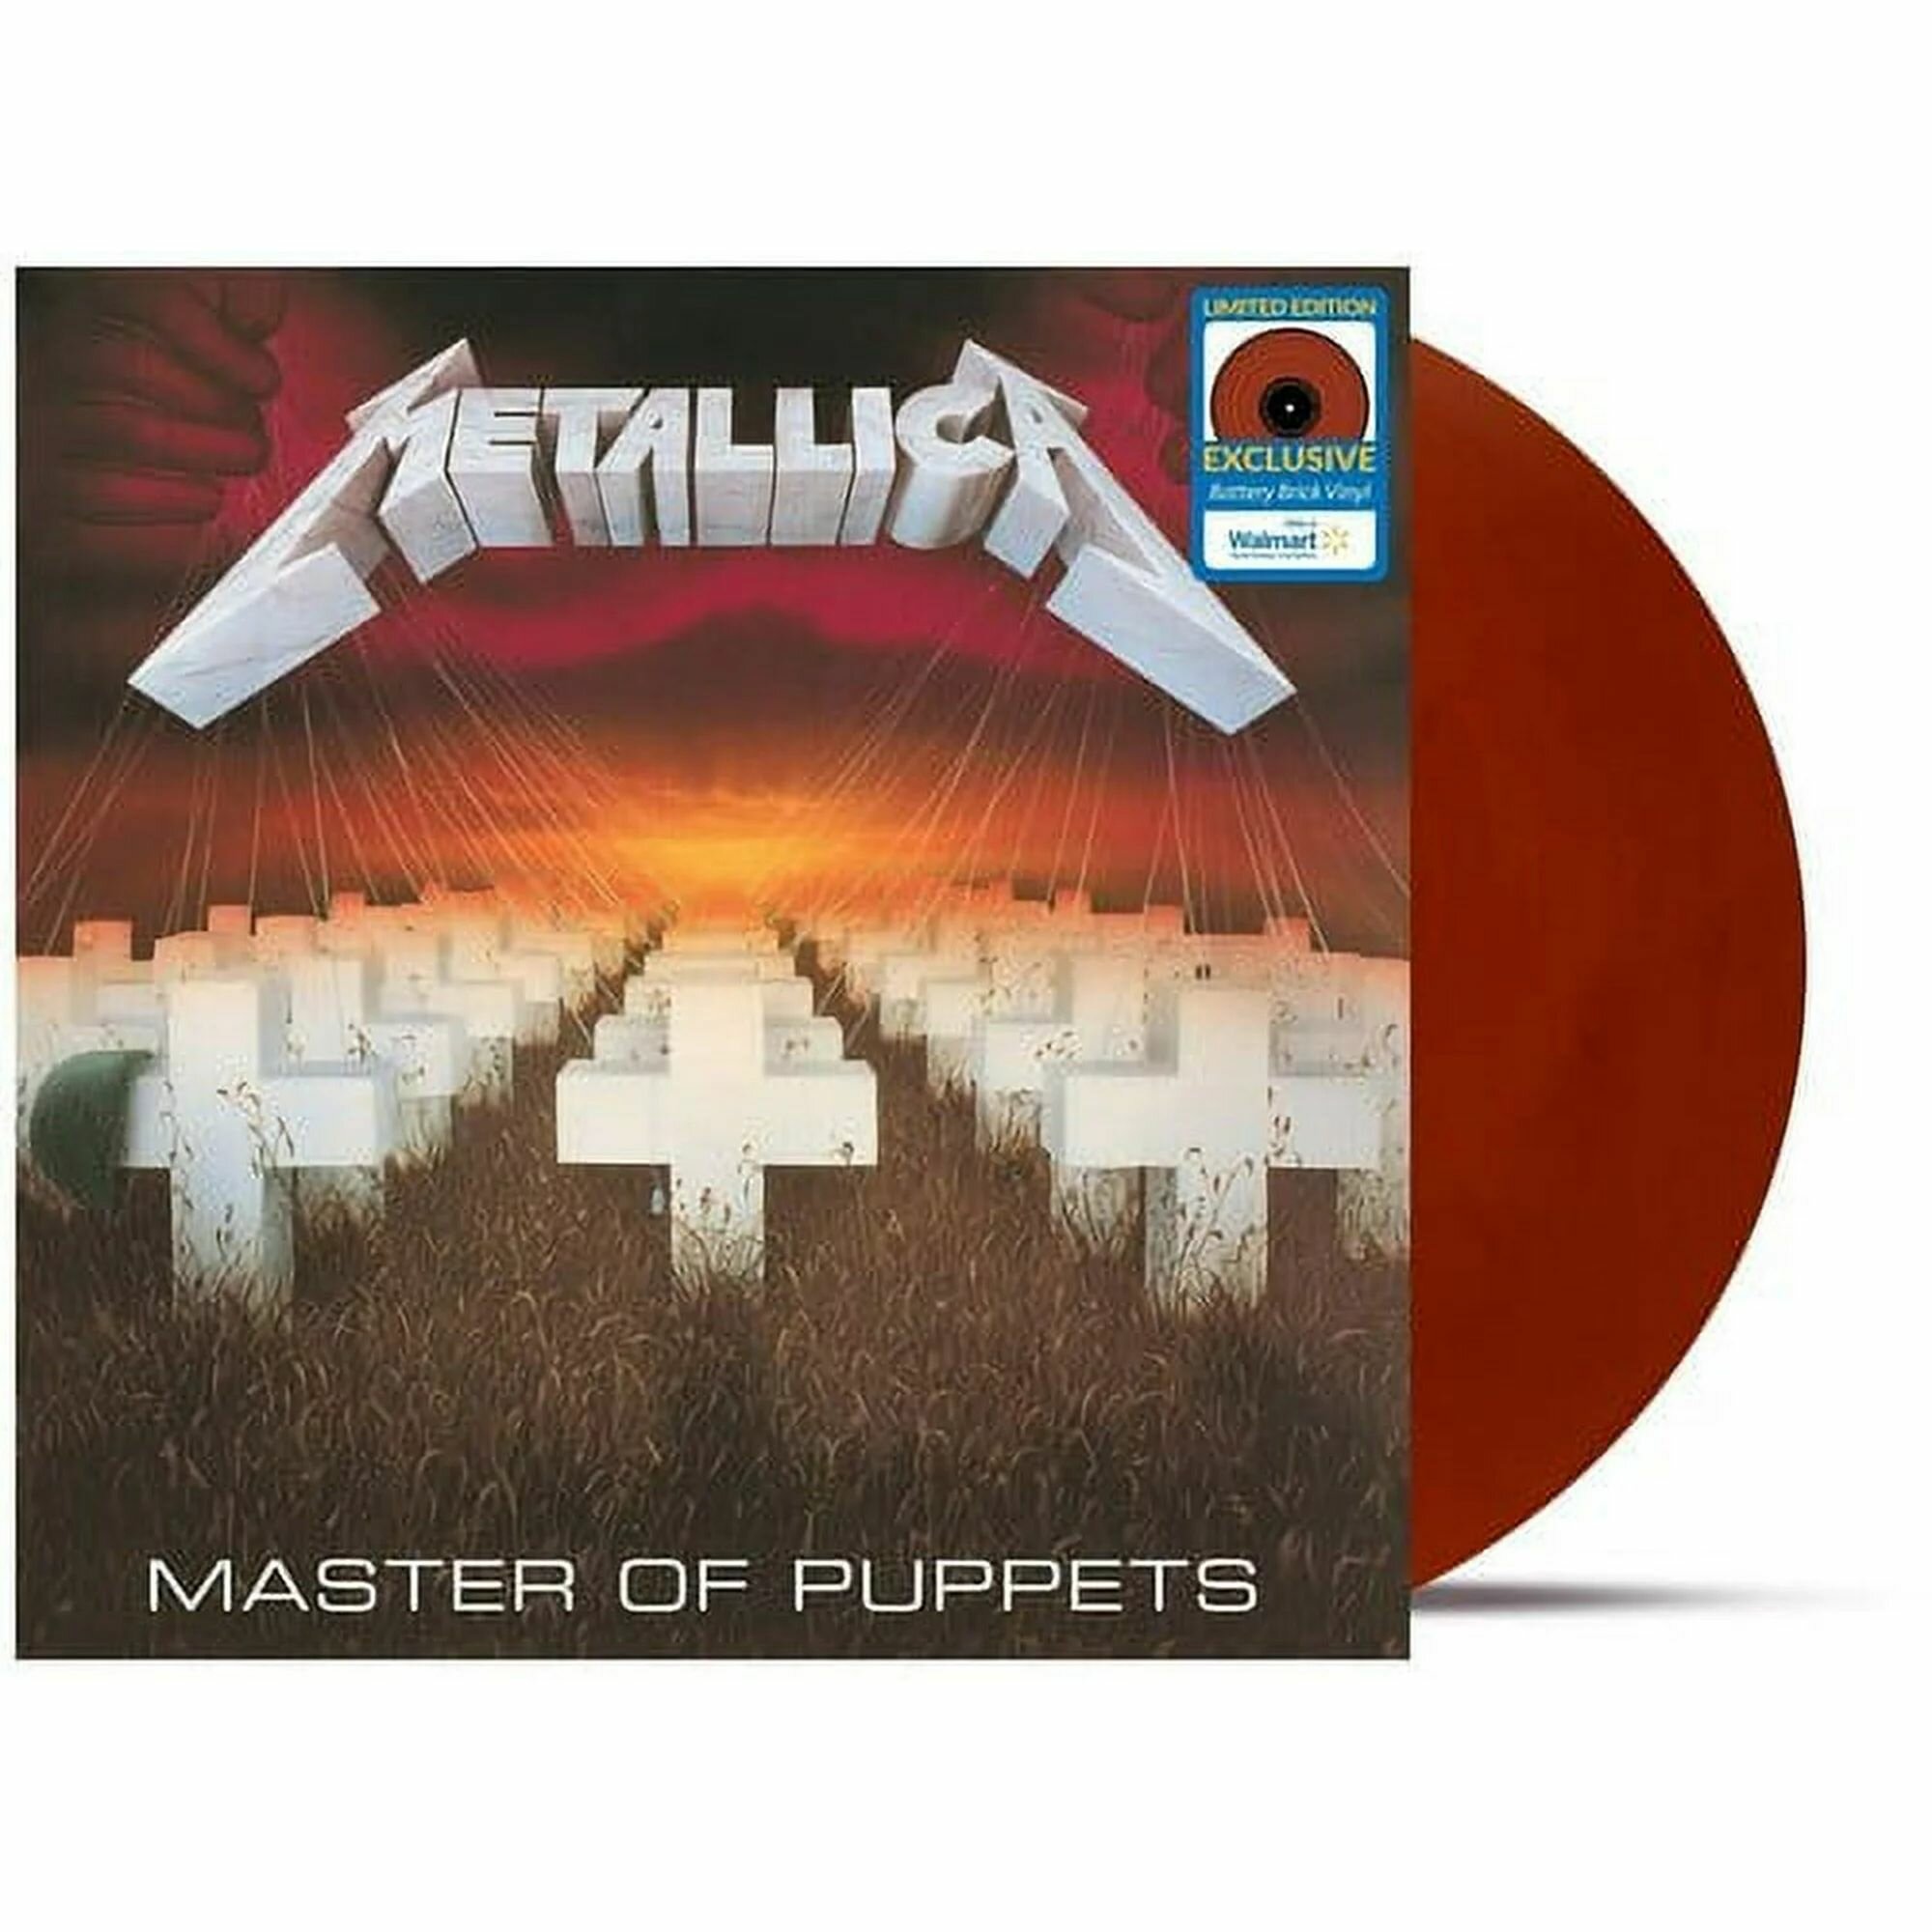 Виниловая пластинка Metallica - Master of Puppets LP 180 гр. (цветная, коллекционная)